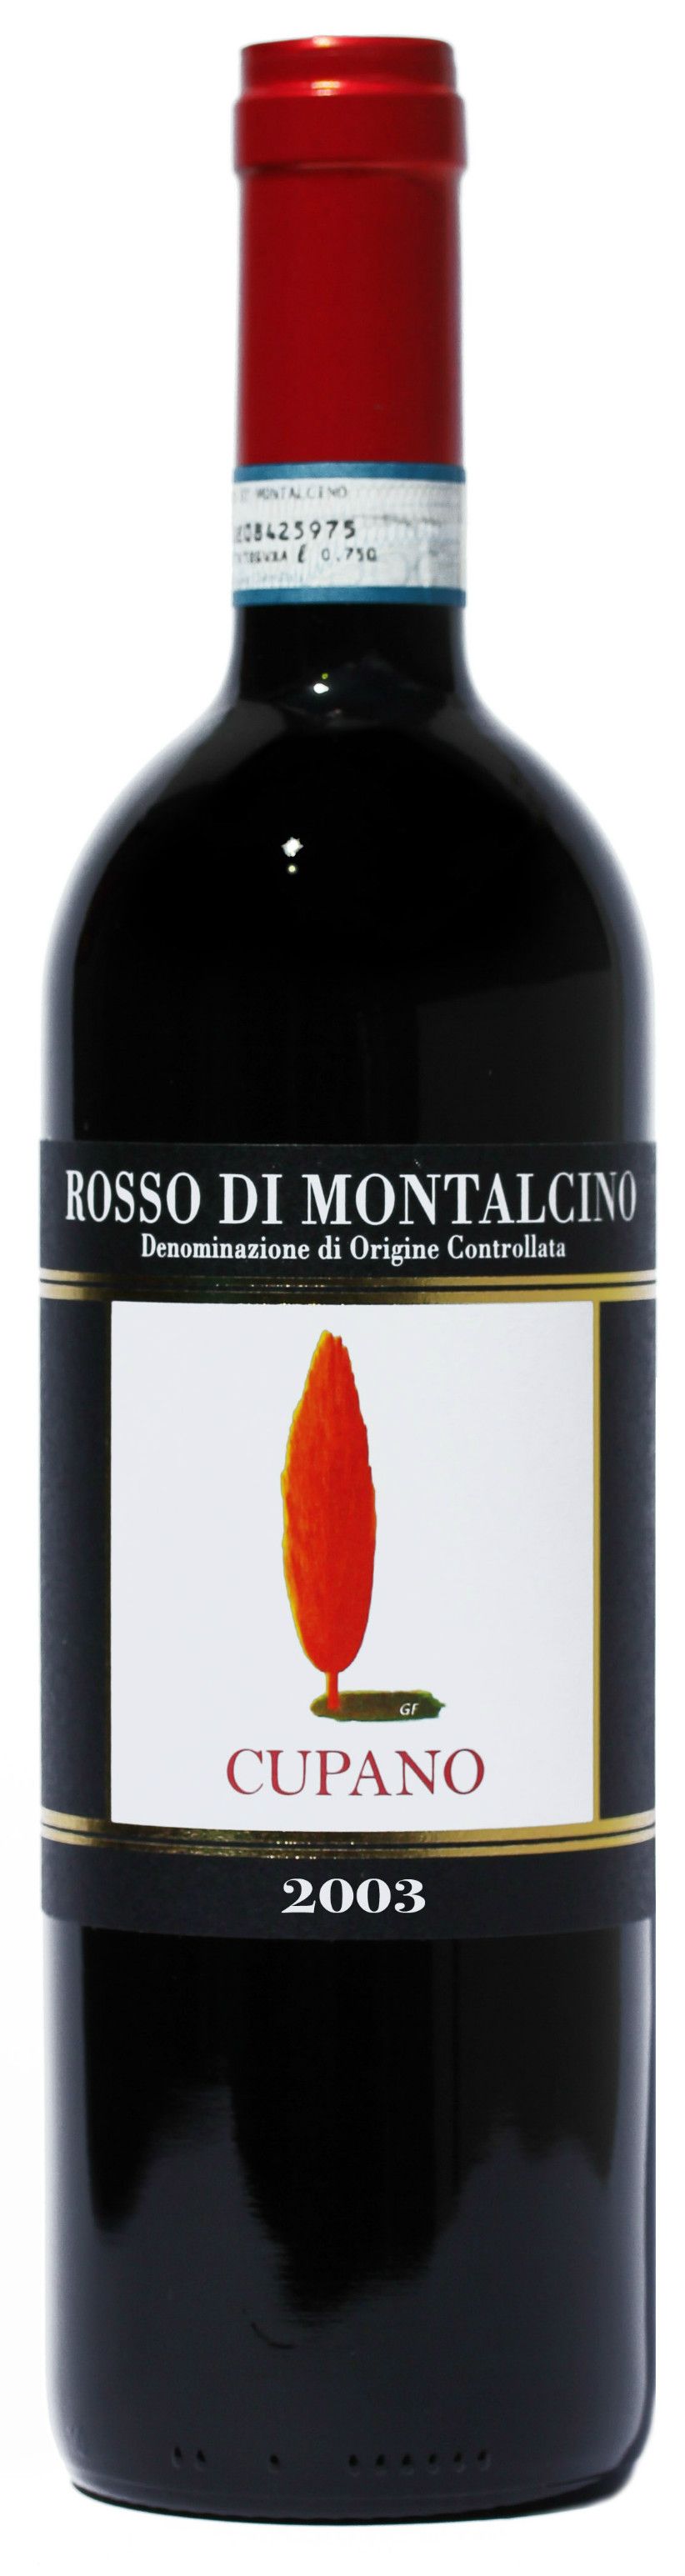 Cupano, Rosso Di Montalcino, 2003